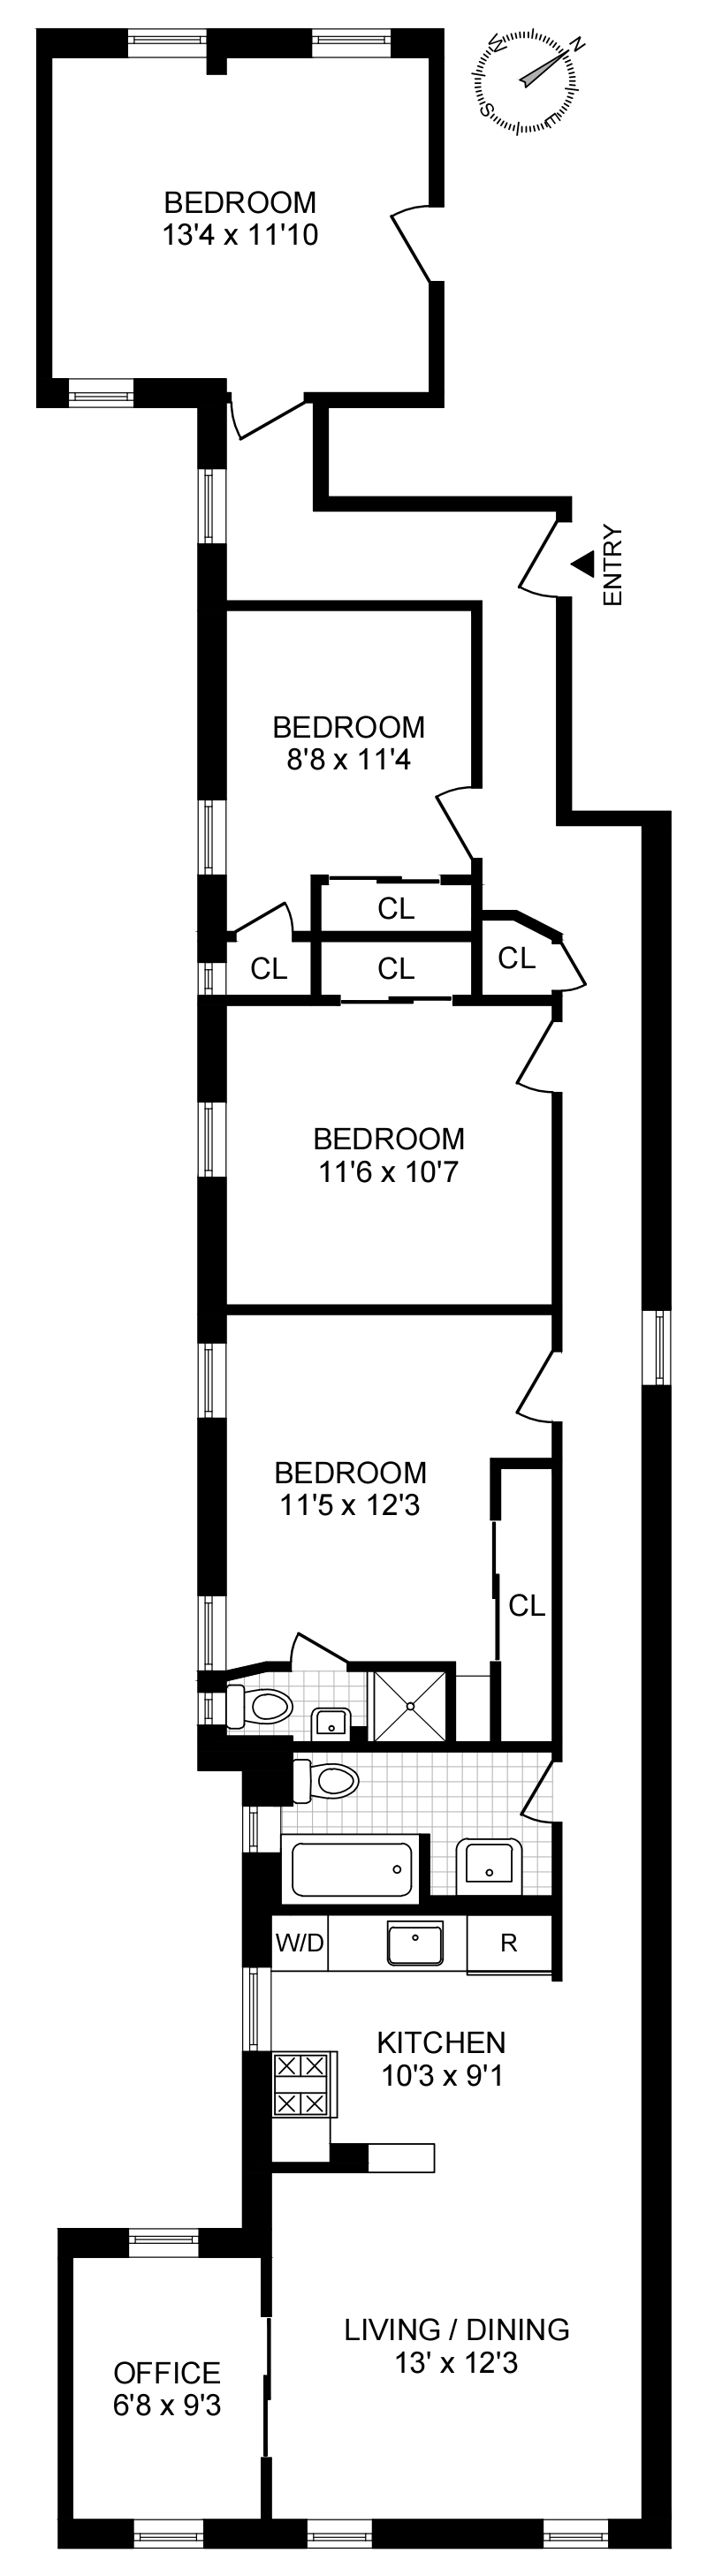 Floorplan for 61 Morningside Ave